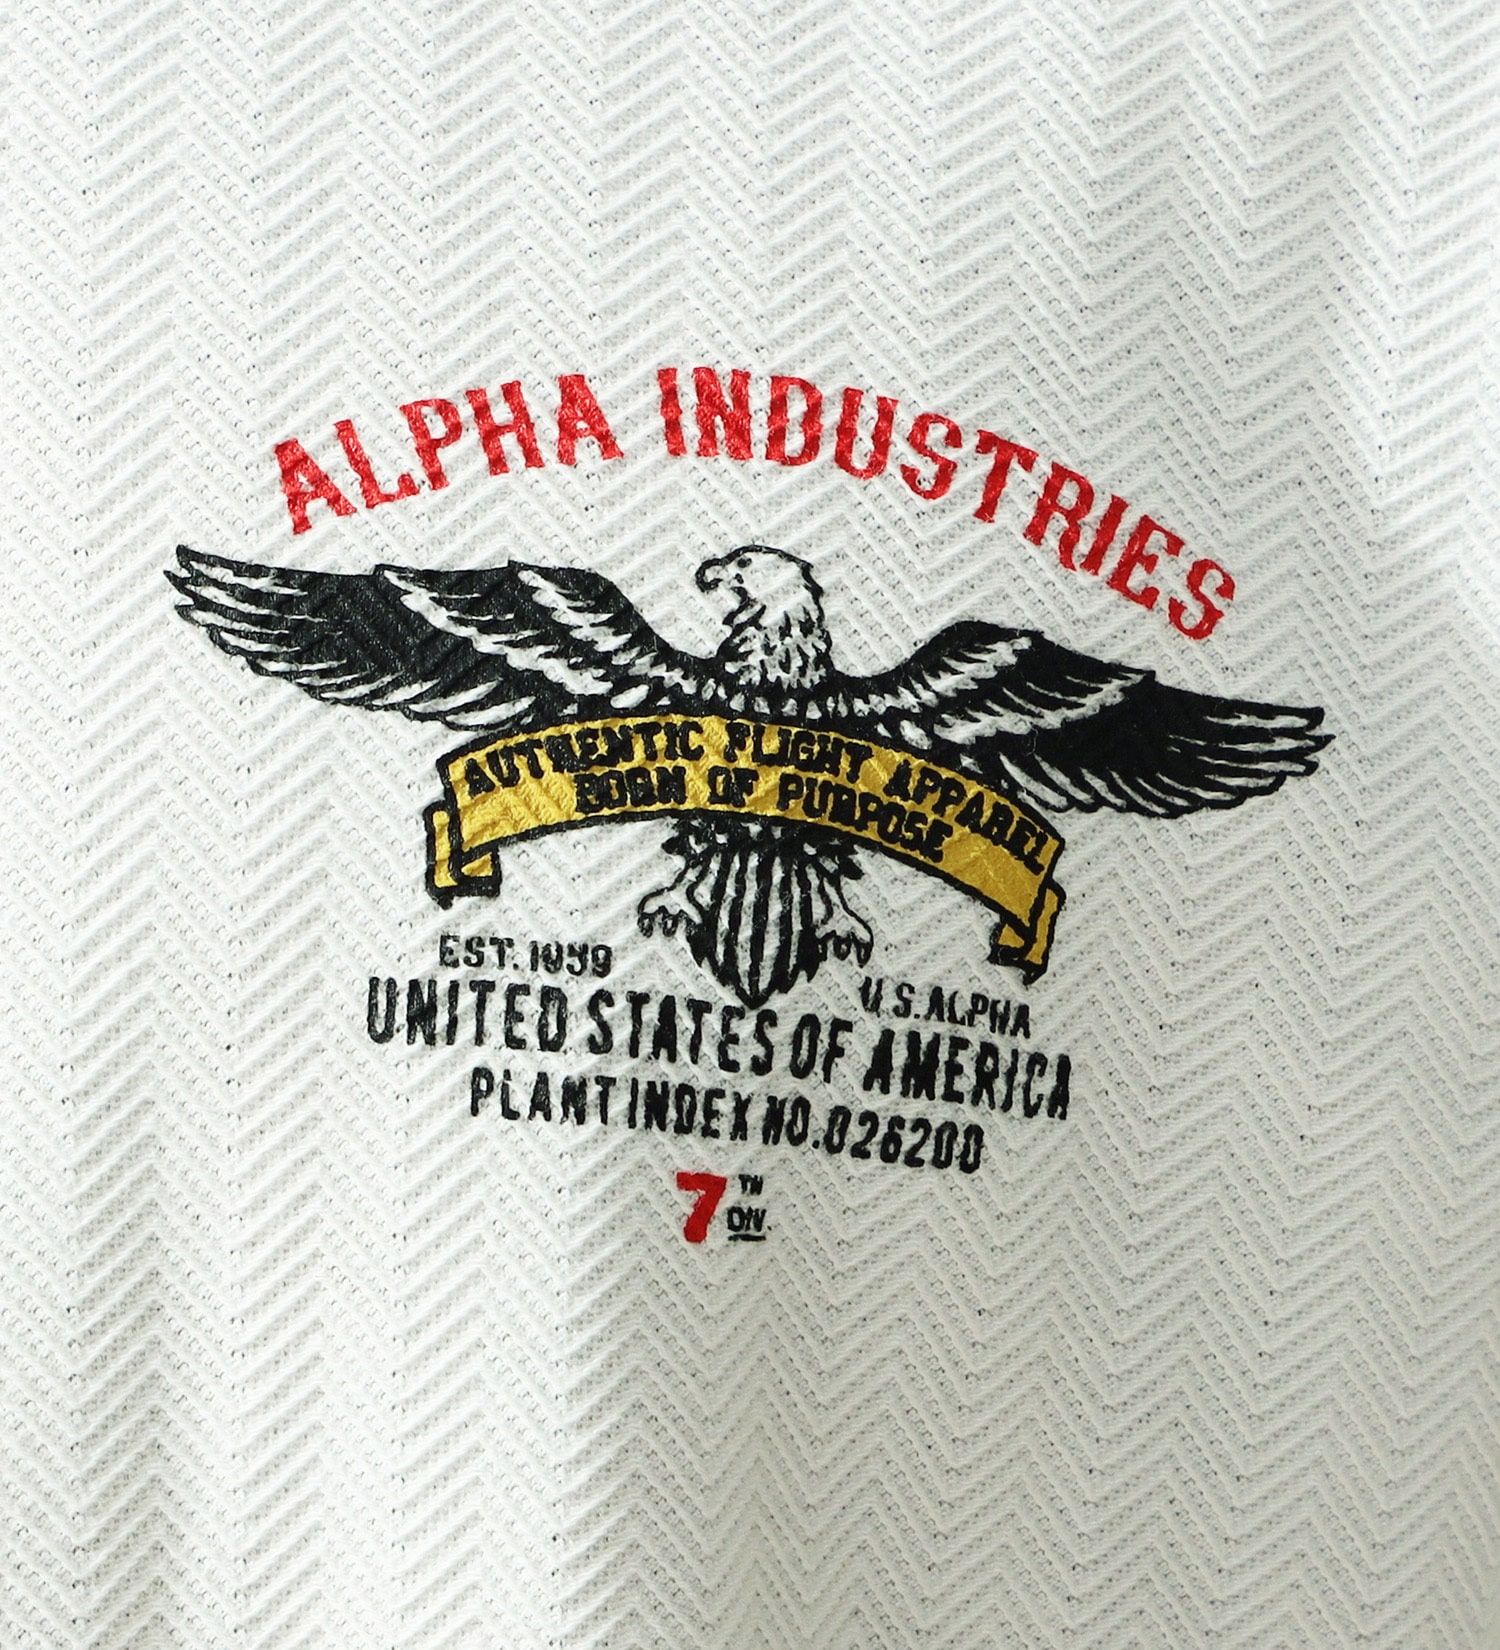 ALPHA(アルファ)の【大きいサイズ】半袖Tシャツ|トップス/Tシャツ/カットソー/メンズ|ホワイト